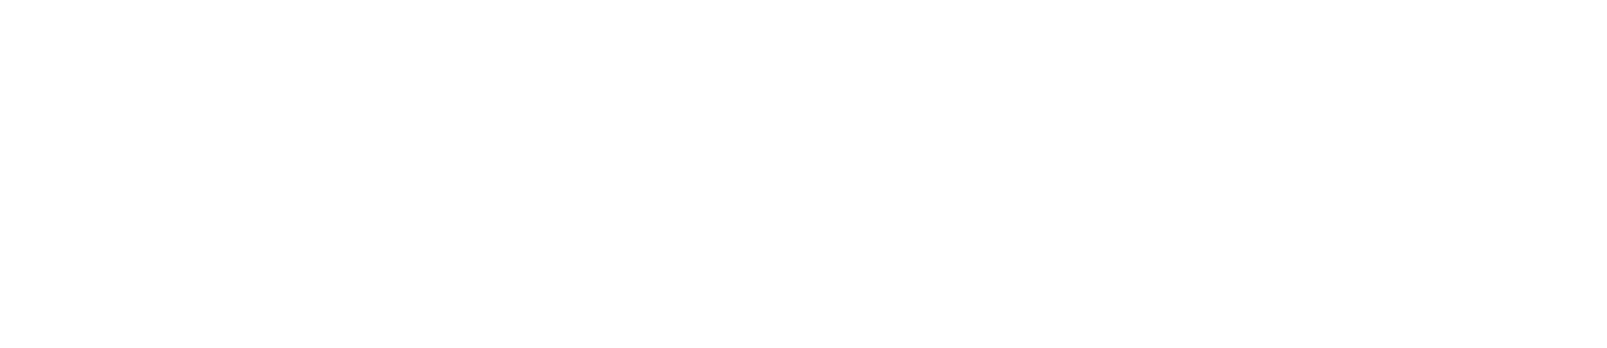 Citycon Logo groß für dunkle Hintergründe (transparentes PNG)